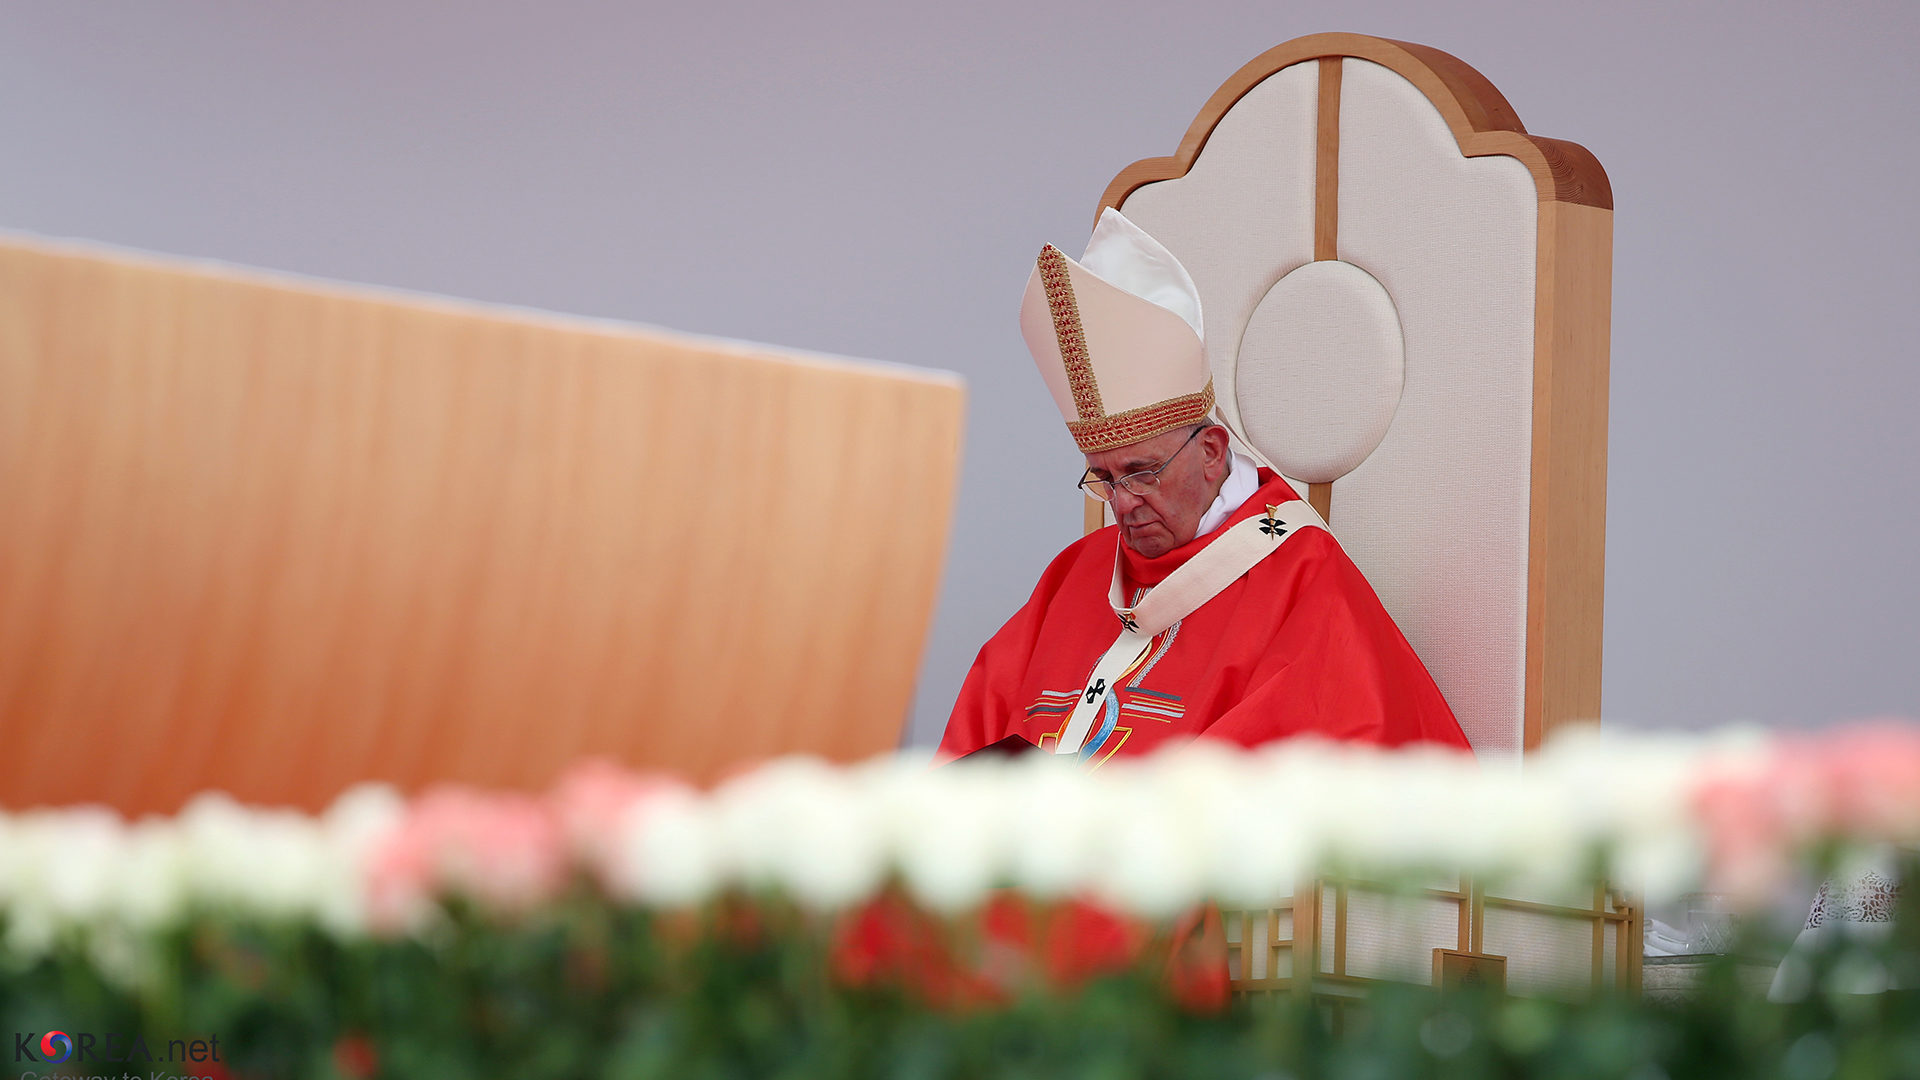 Le pape François est-il en train de se mettre à dos une partie de l’opinion publique? | ©Flickr/koreanet